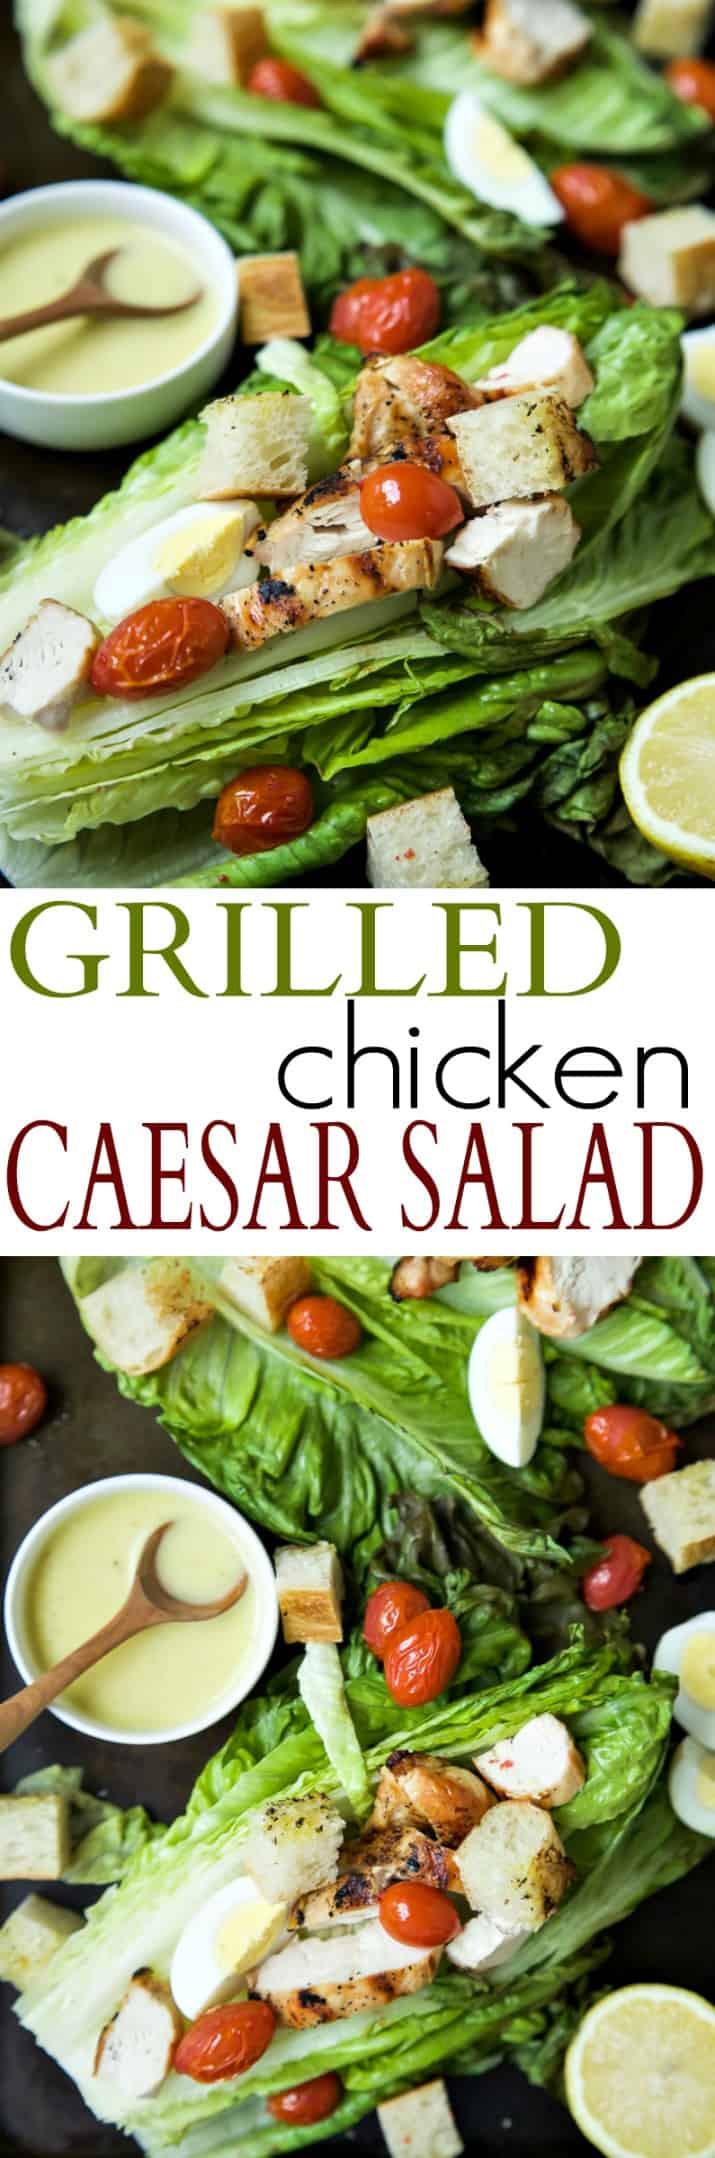 Chicken Caesar Salad Nutrition
 Grilled Chicken Caesar Salad